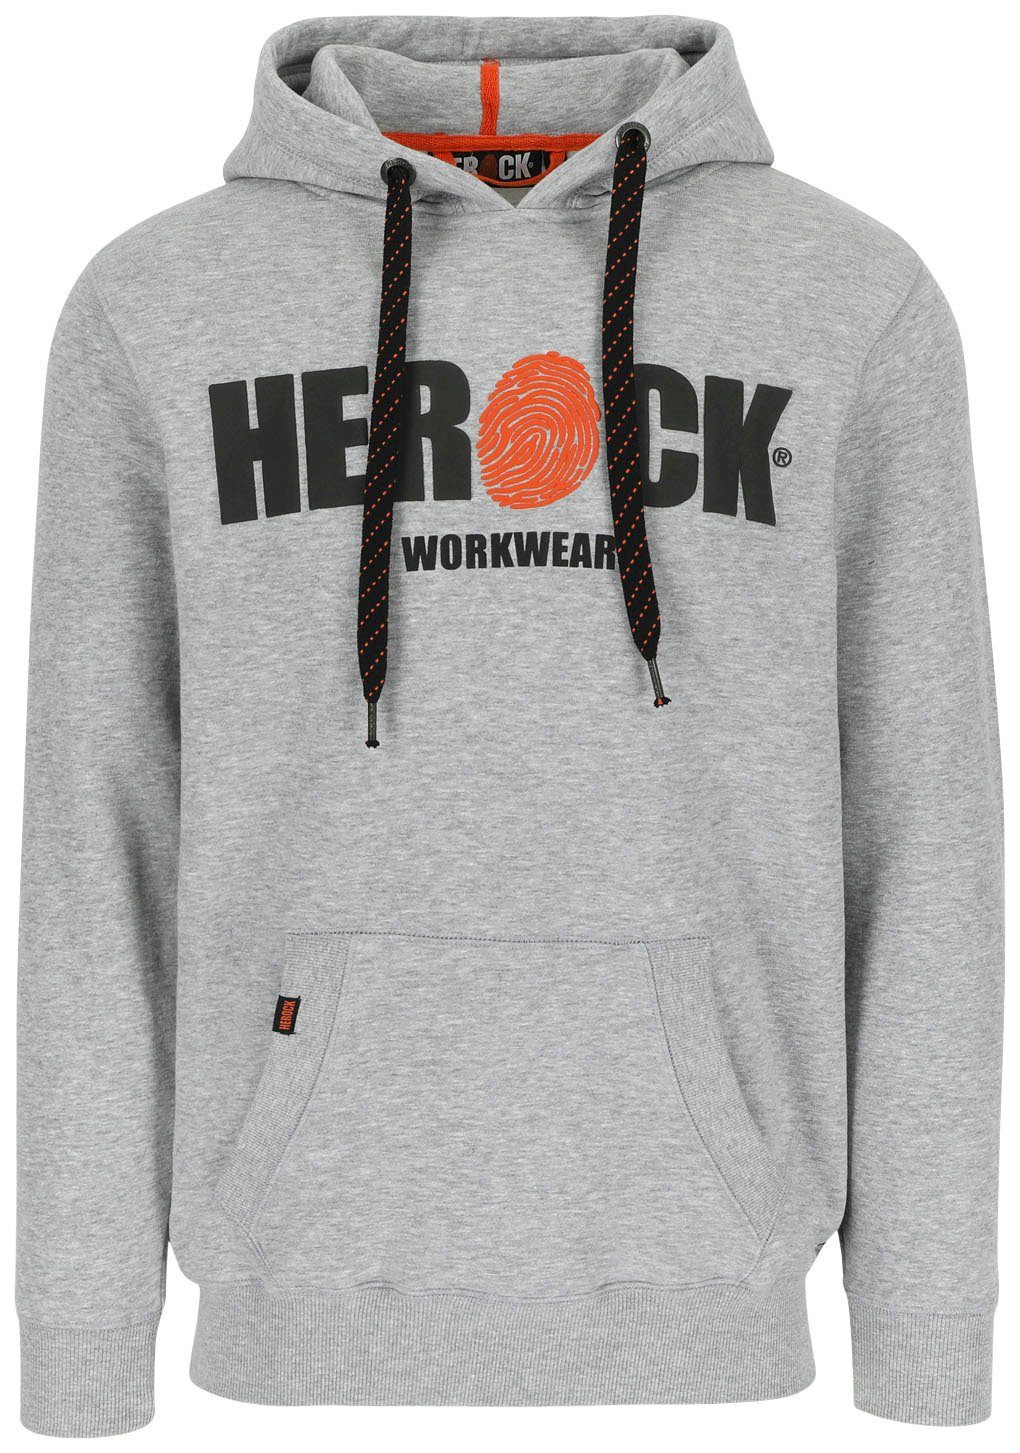 Herock Hoodie HERO grau Kangurutasche, weich angenehm und Mit sehr Herock®-Aufdruck